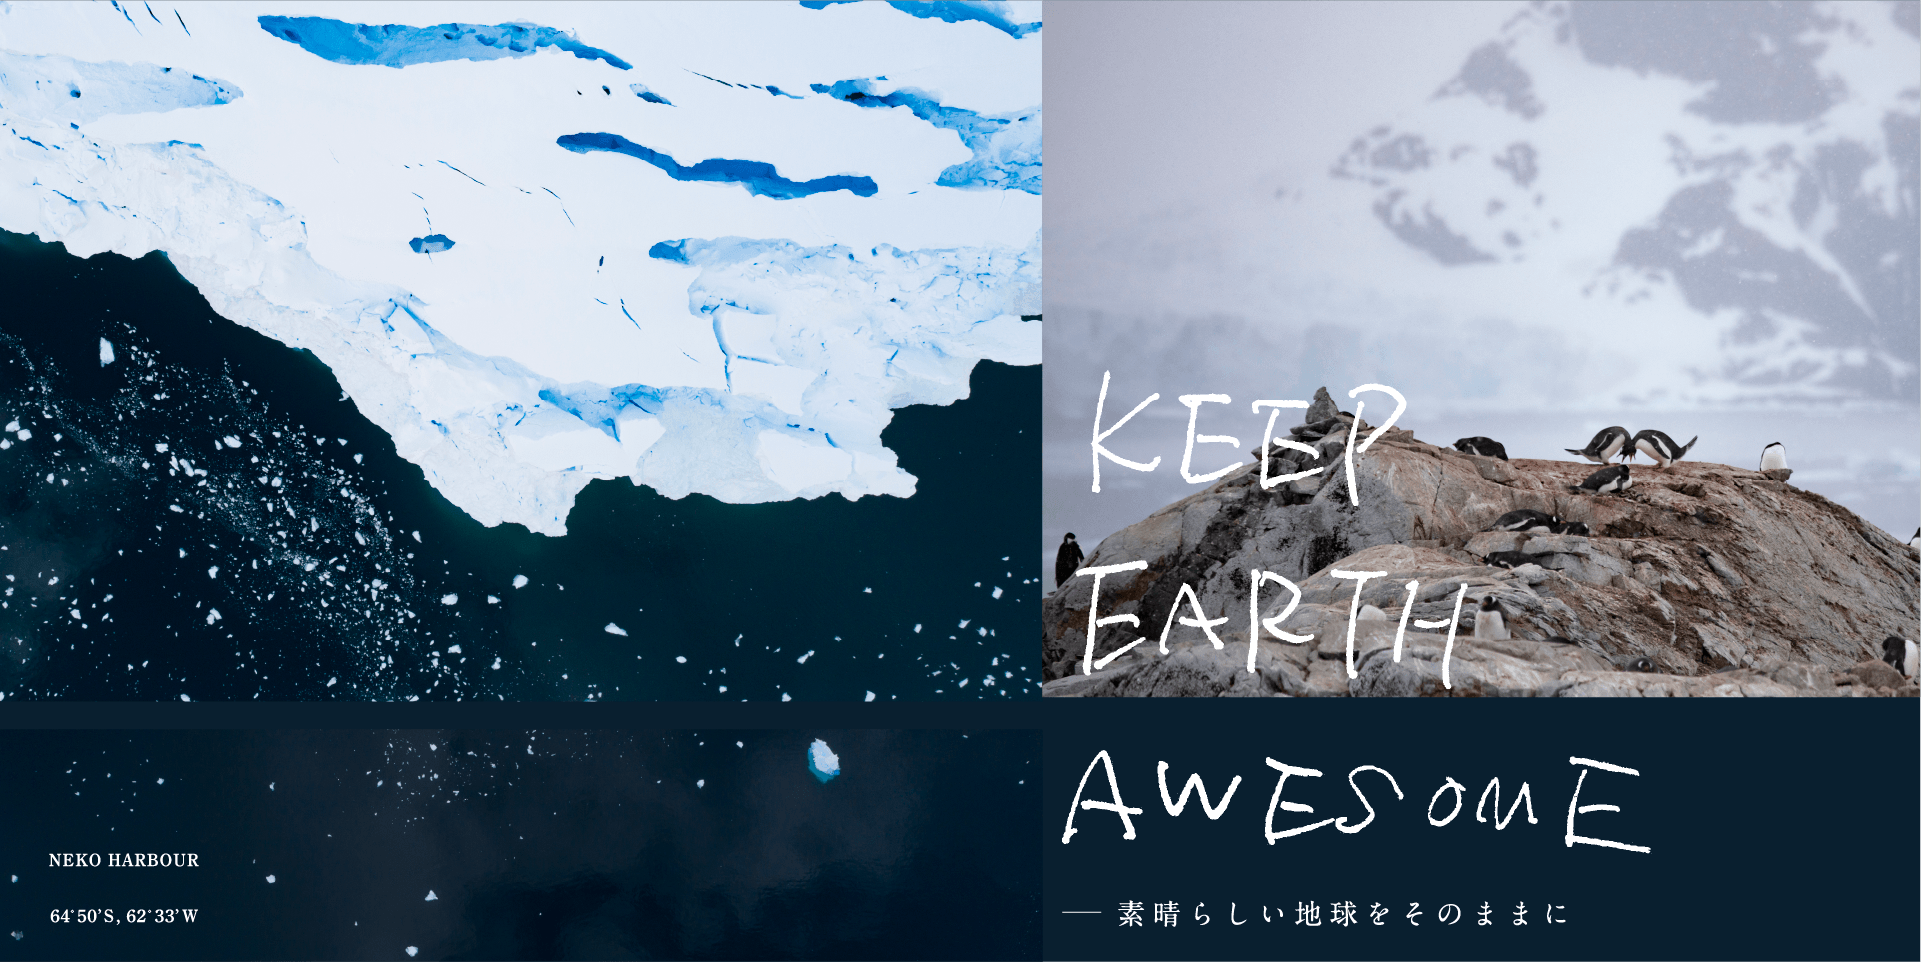 KEEP EARTH AWESOME